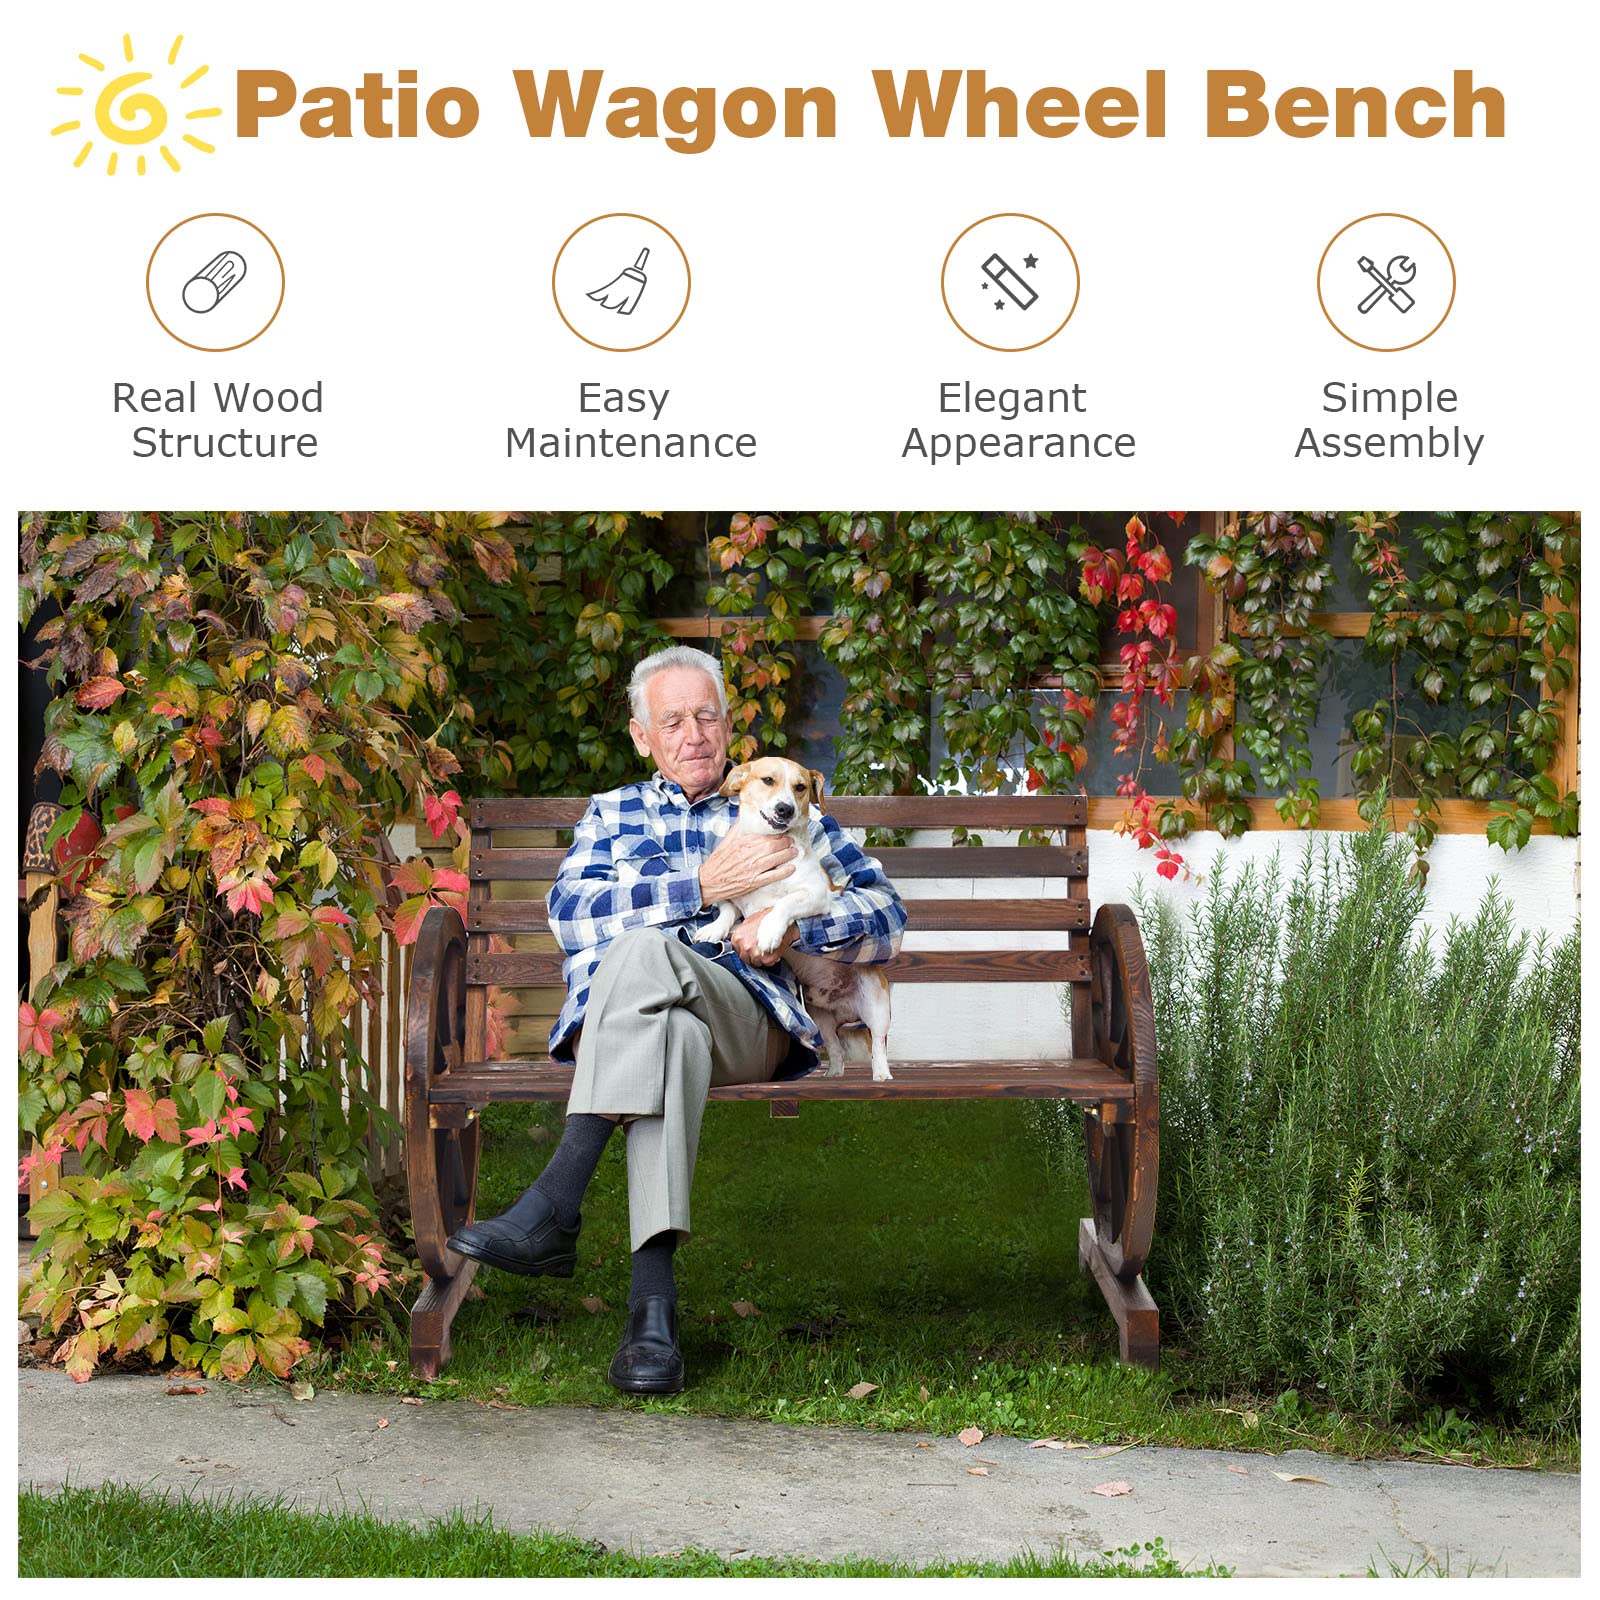 Giantex Outdoor Bench Wooden Wagon Wheel Bench, 2-Person Outdoor Garden Bench